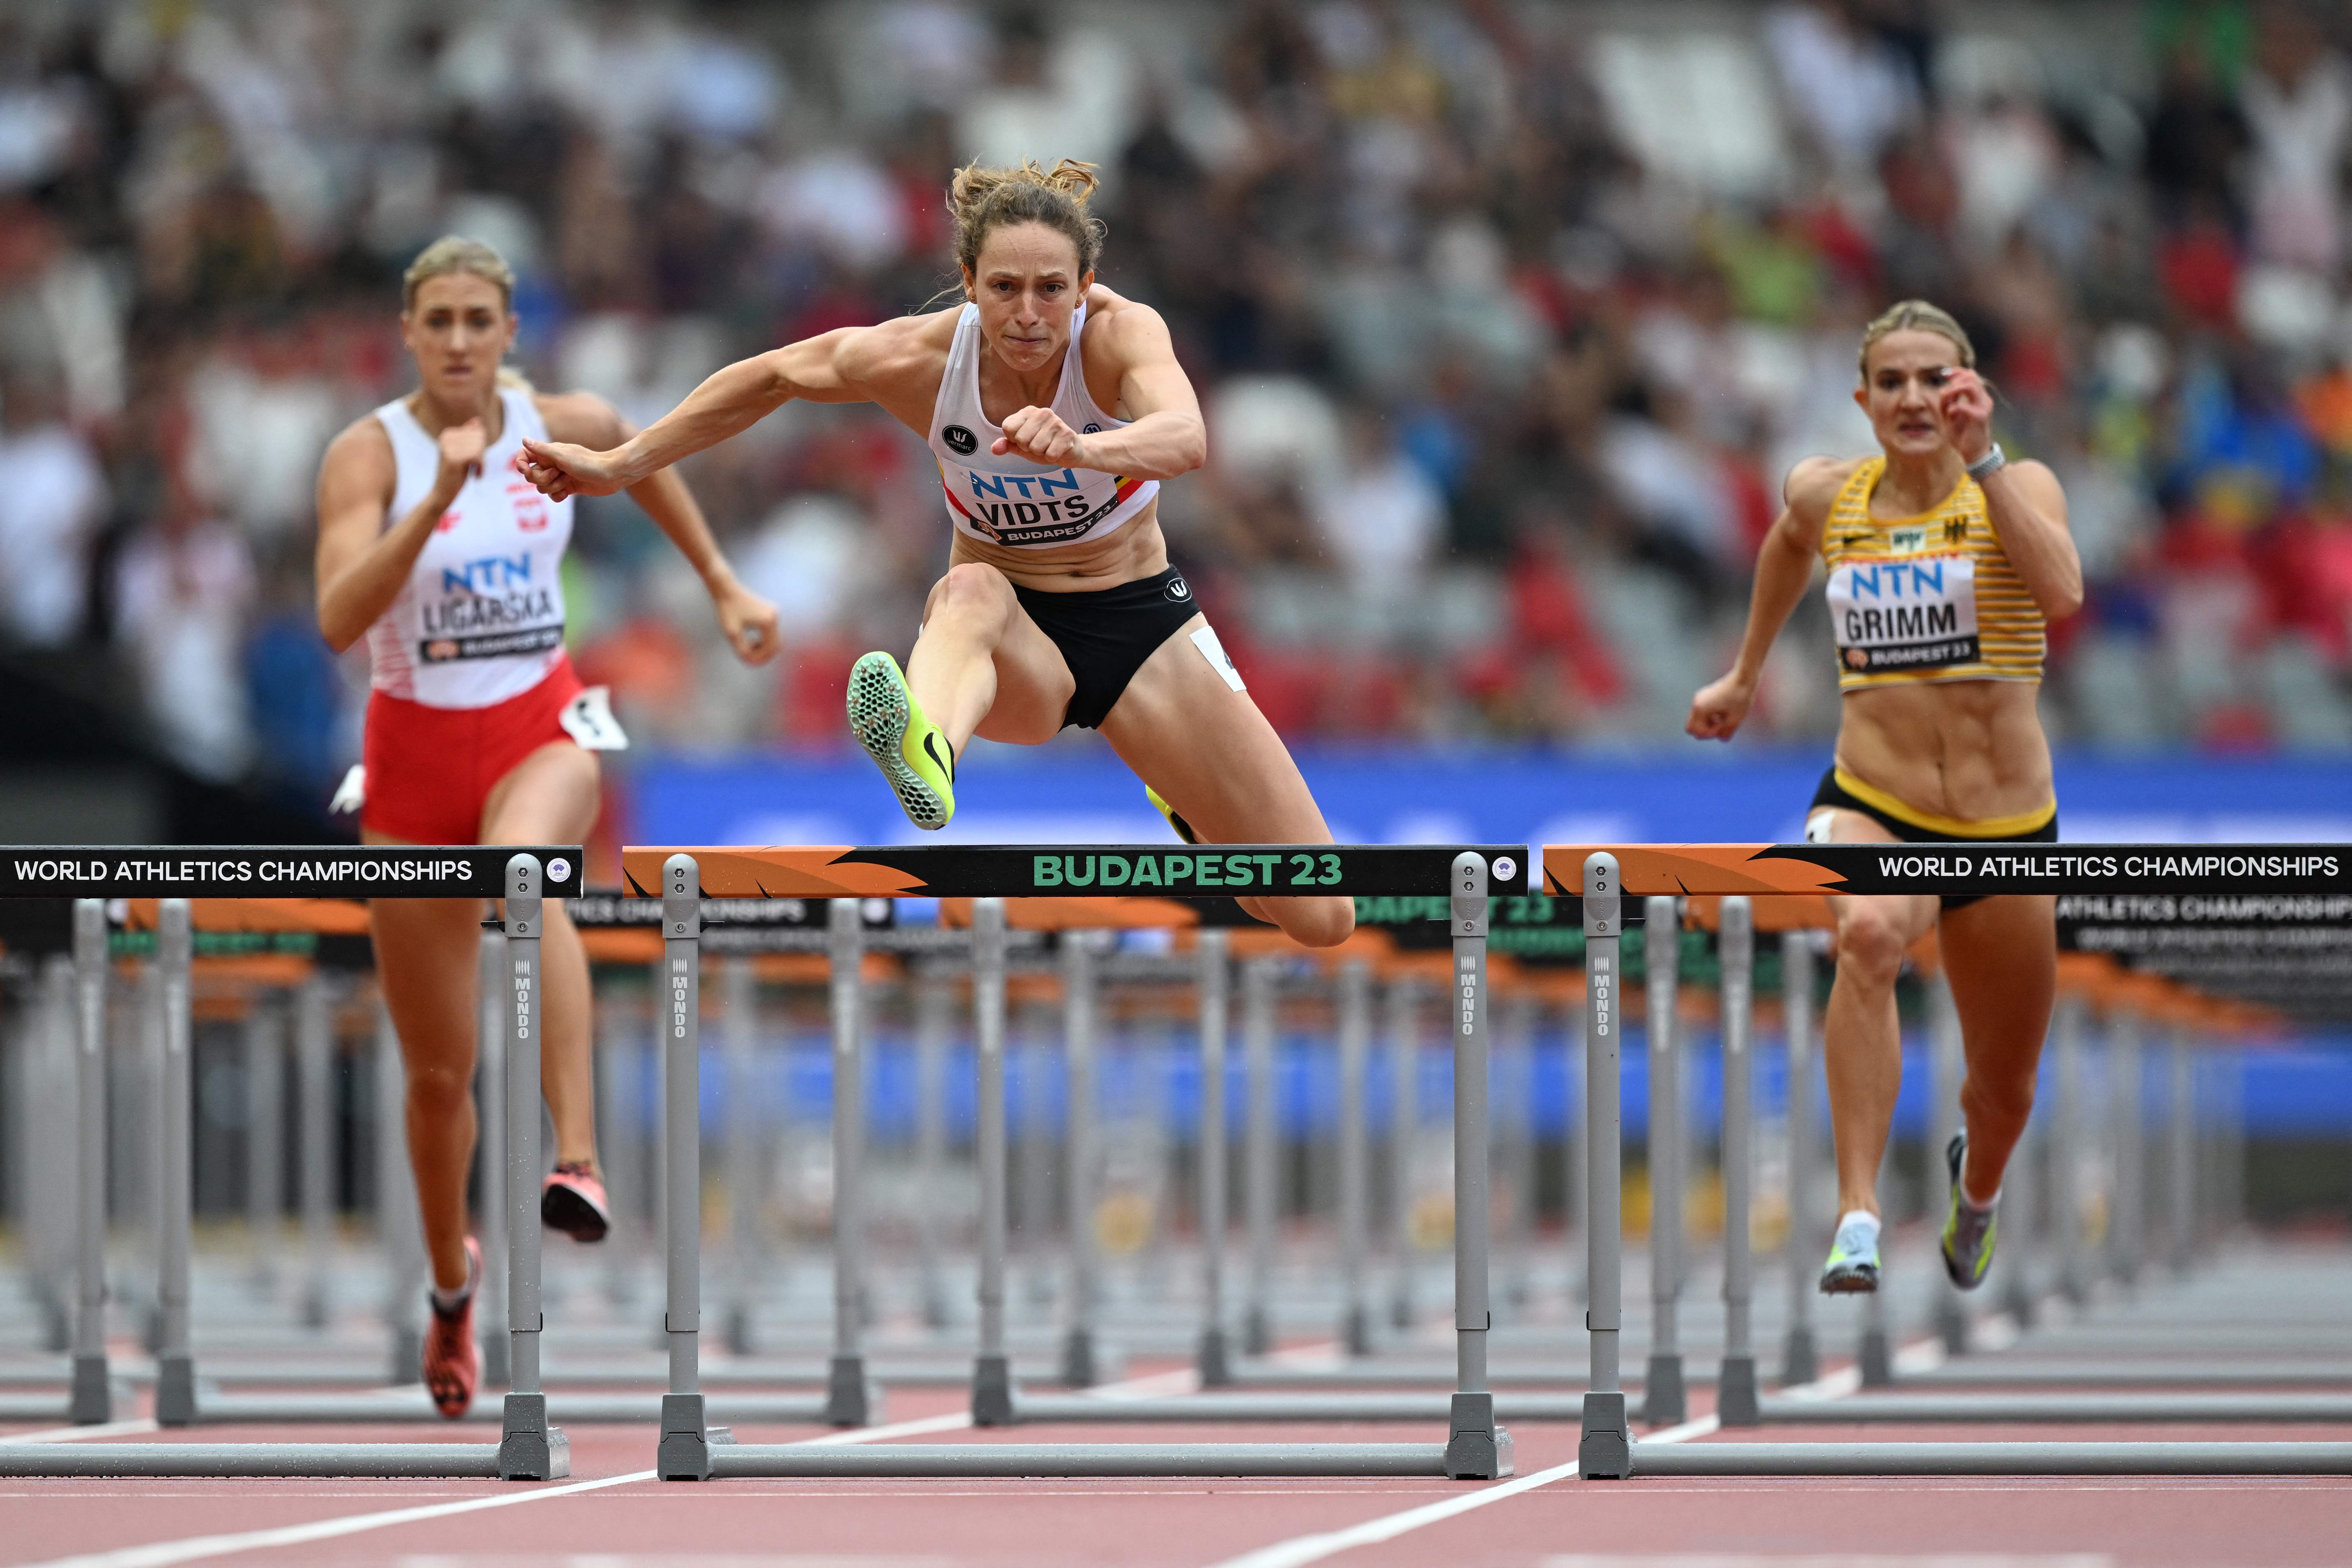 Mondiaux d'athlétisme : Noor Vidts saute 6m35 à la longueur et grimpe à la  4e place du classement de l'heptathlon - L'Avenir